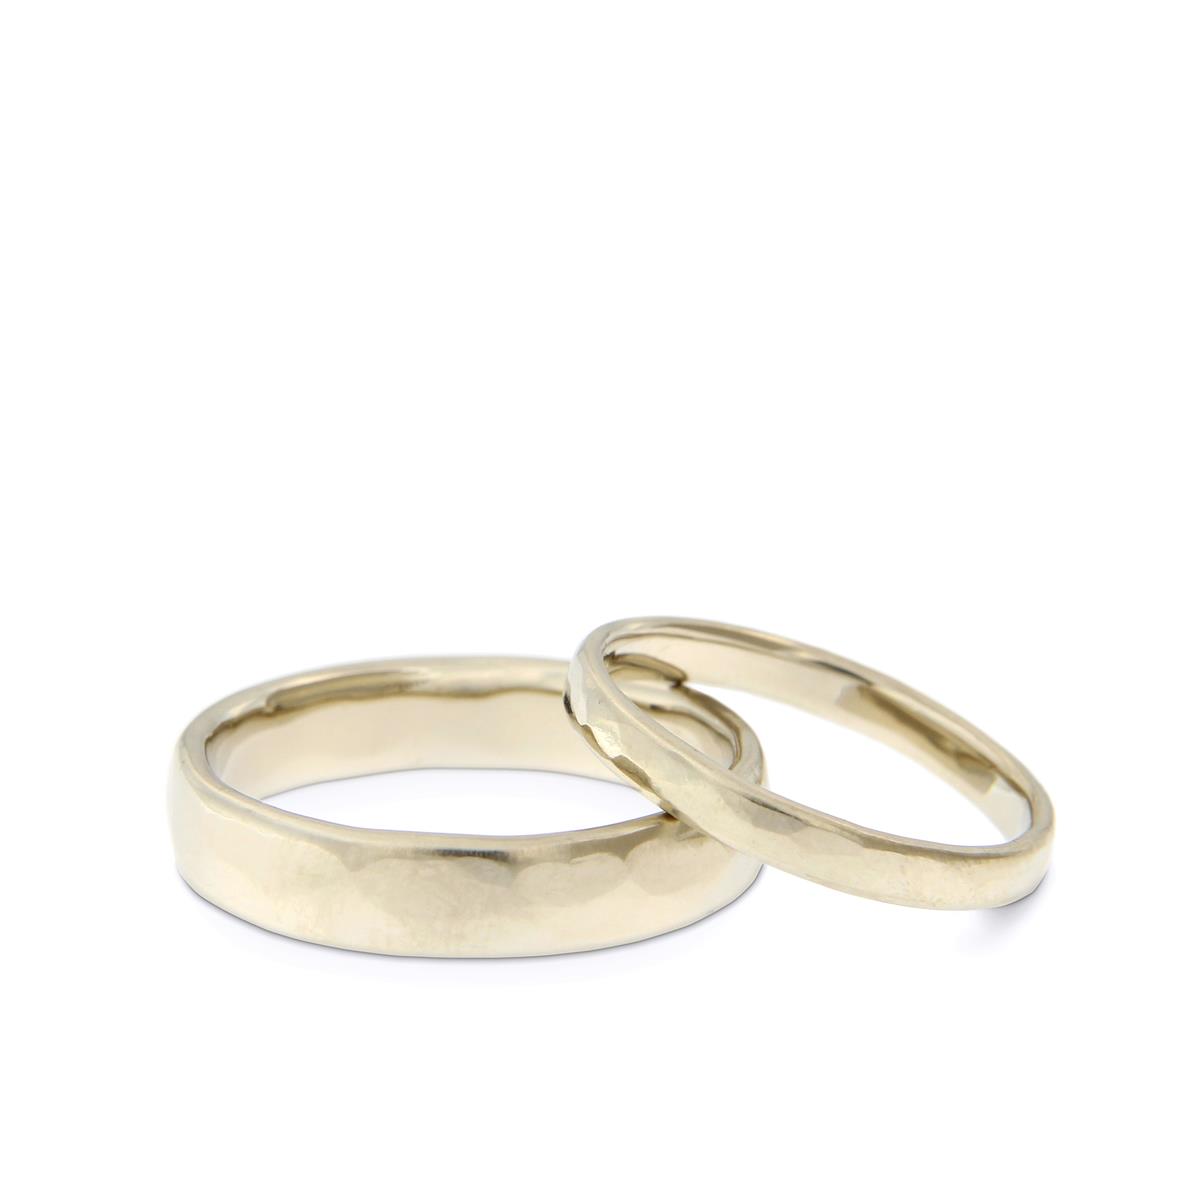 Katie g. Jewellery – Wedding - Damen und Herrenring in Oval in 14kt. natürlichem Weißgold in unterschiedlichen Formaten